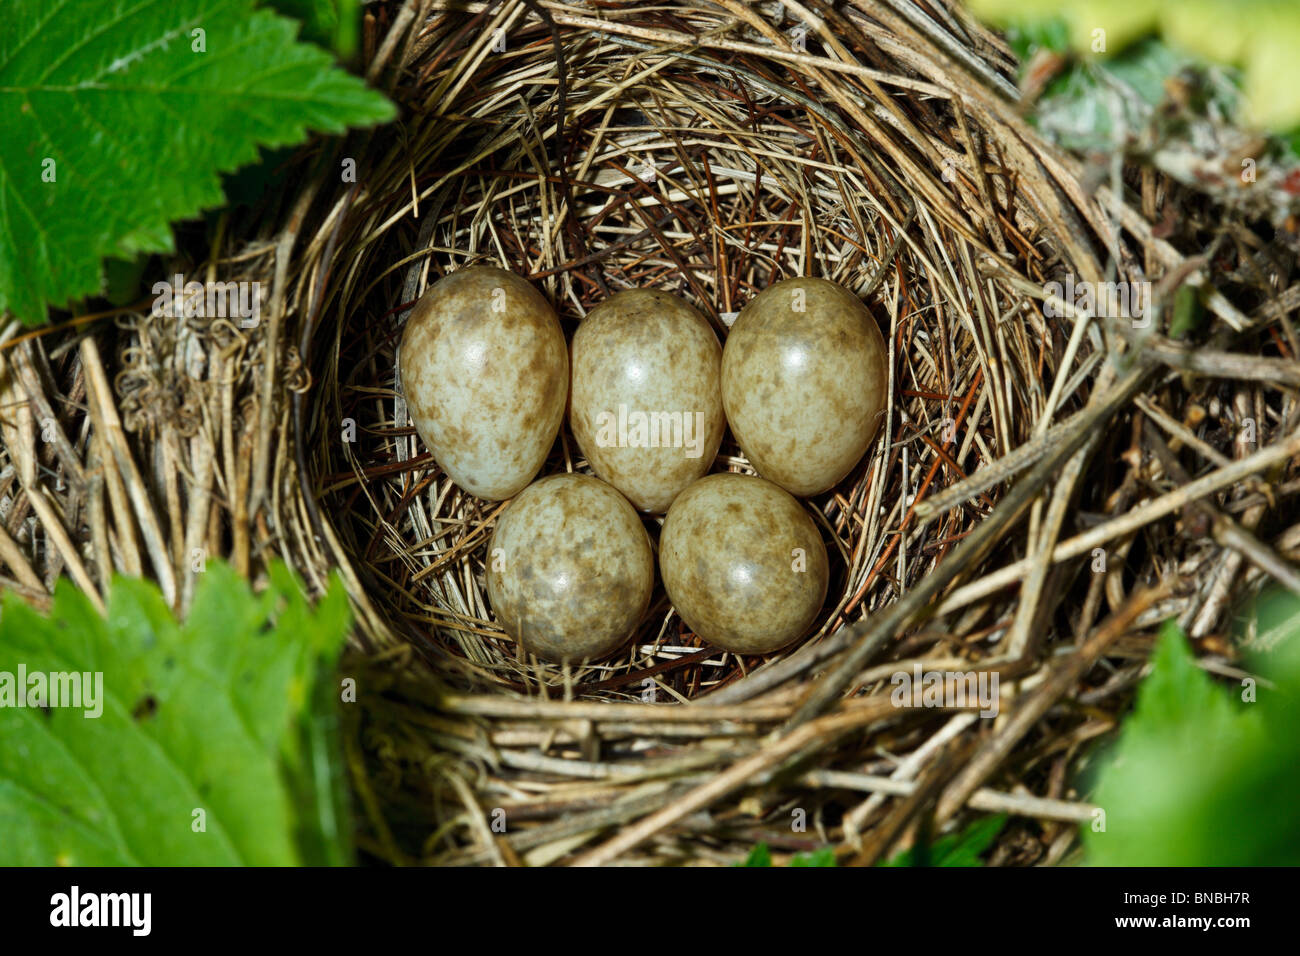 Garten-Grasmücke, Sylvia borin. Nest eines Vogels mit Eiern in der Natur. Stockfoto